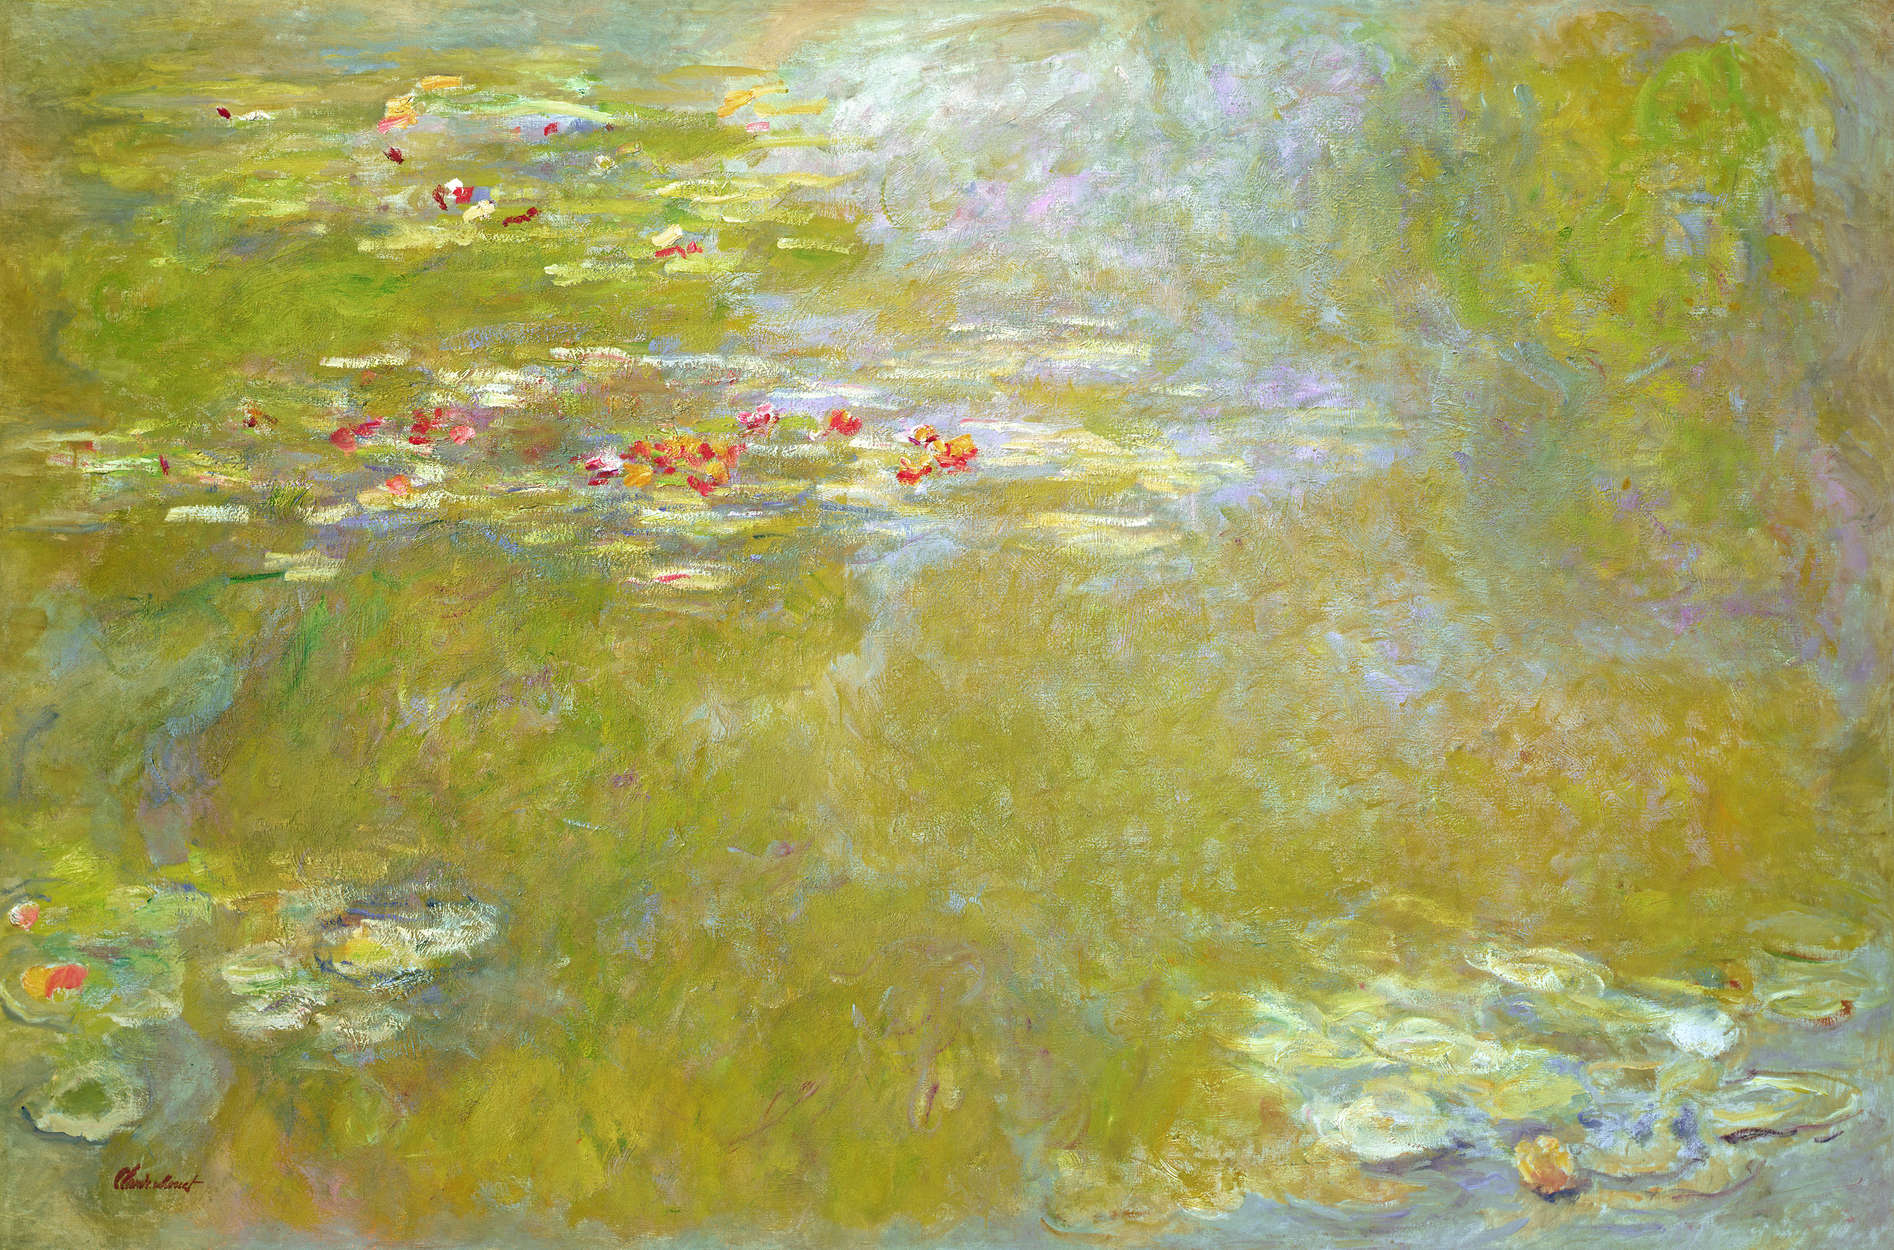             Papier peint panoramique "Les nymphes" de Claude Monet
        